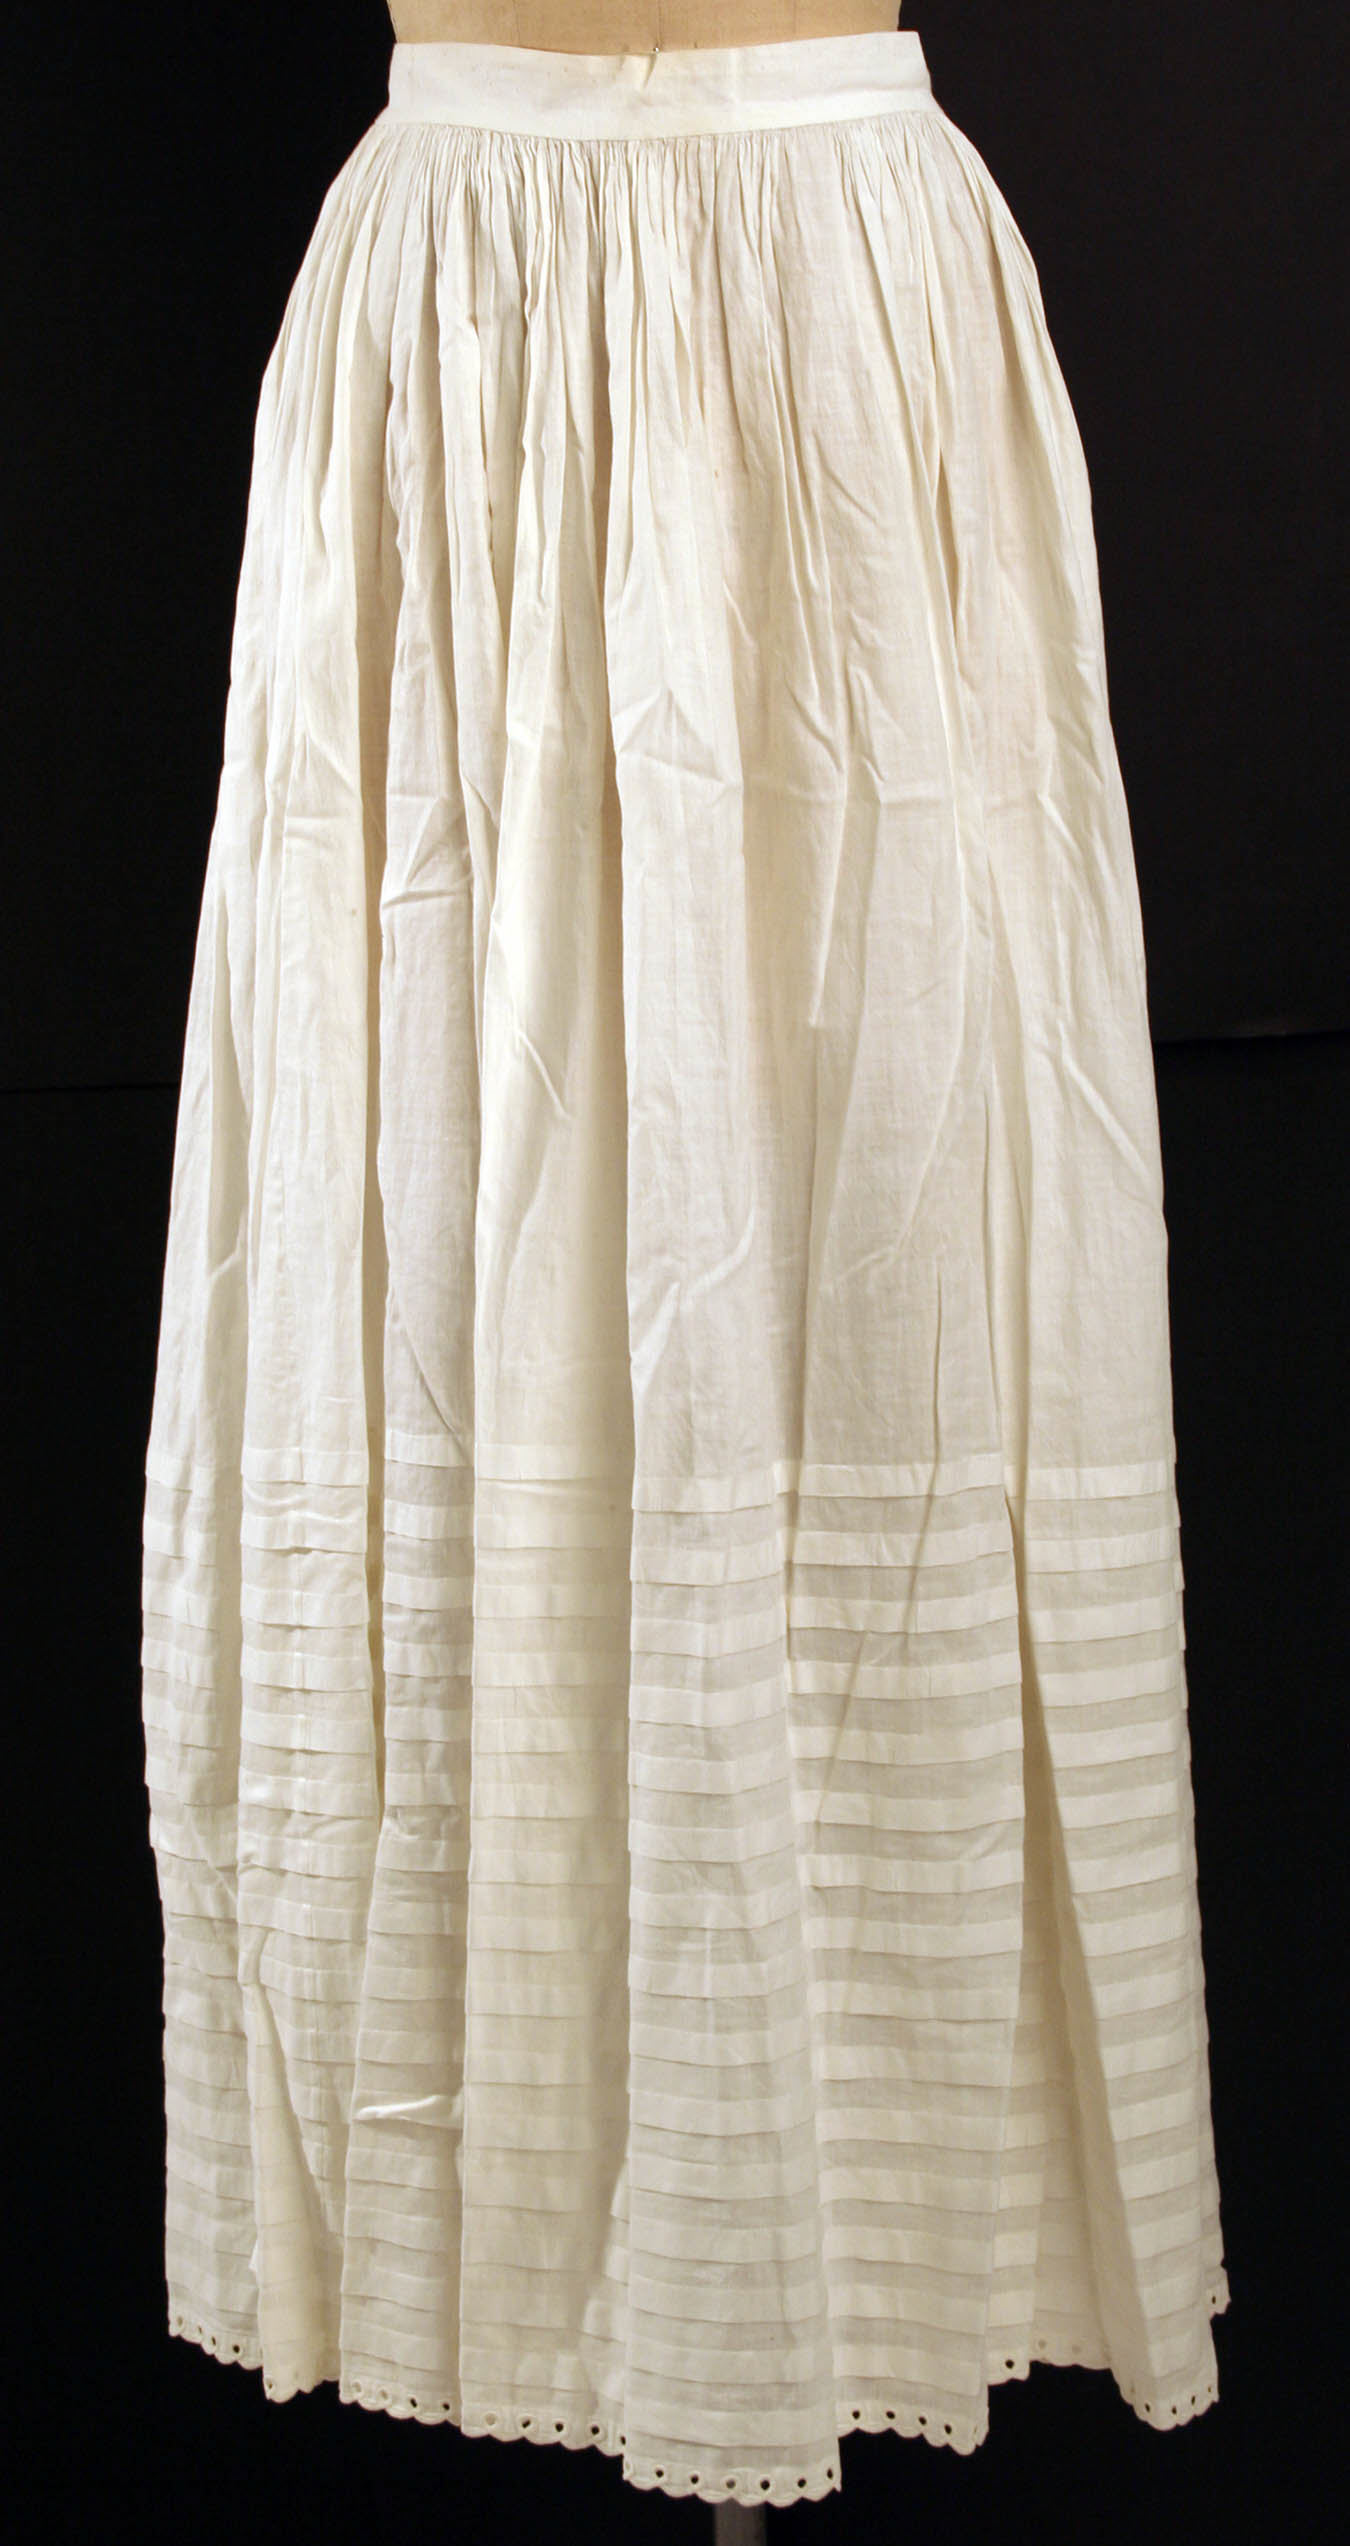 Underskirt | American or European | The Metropolitan Museum of Art